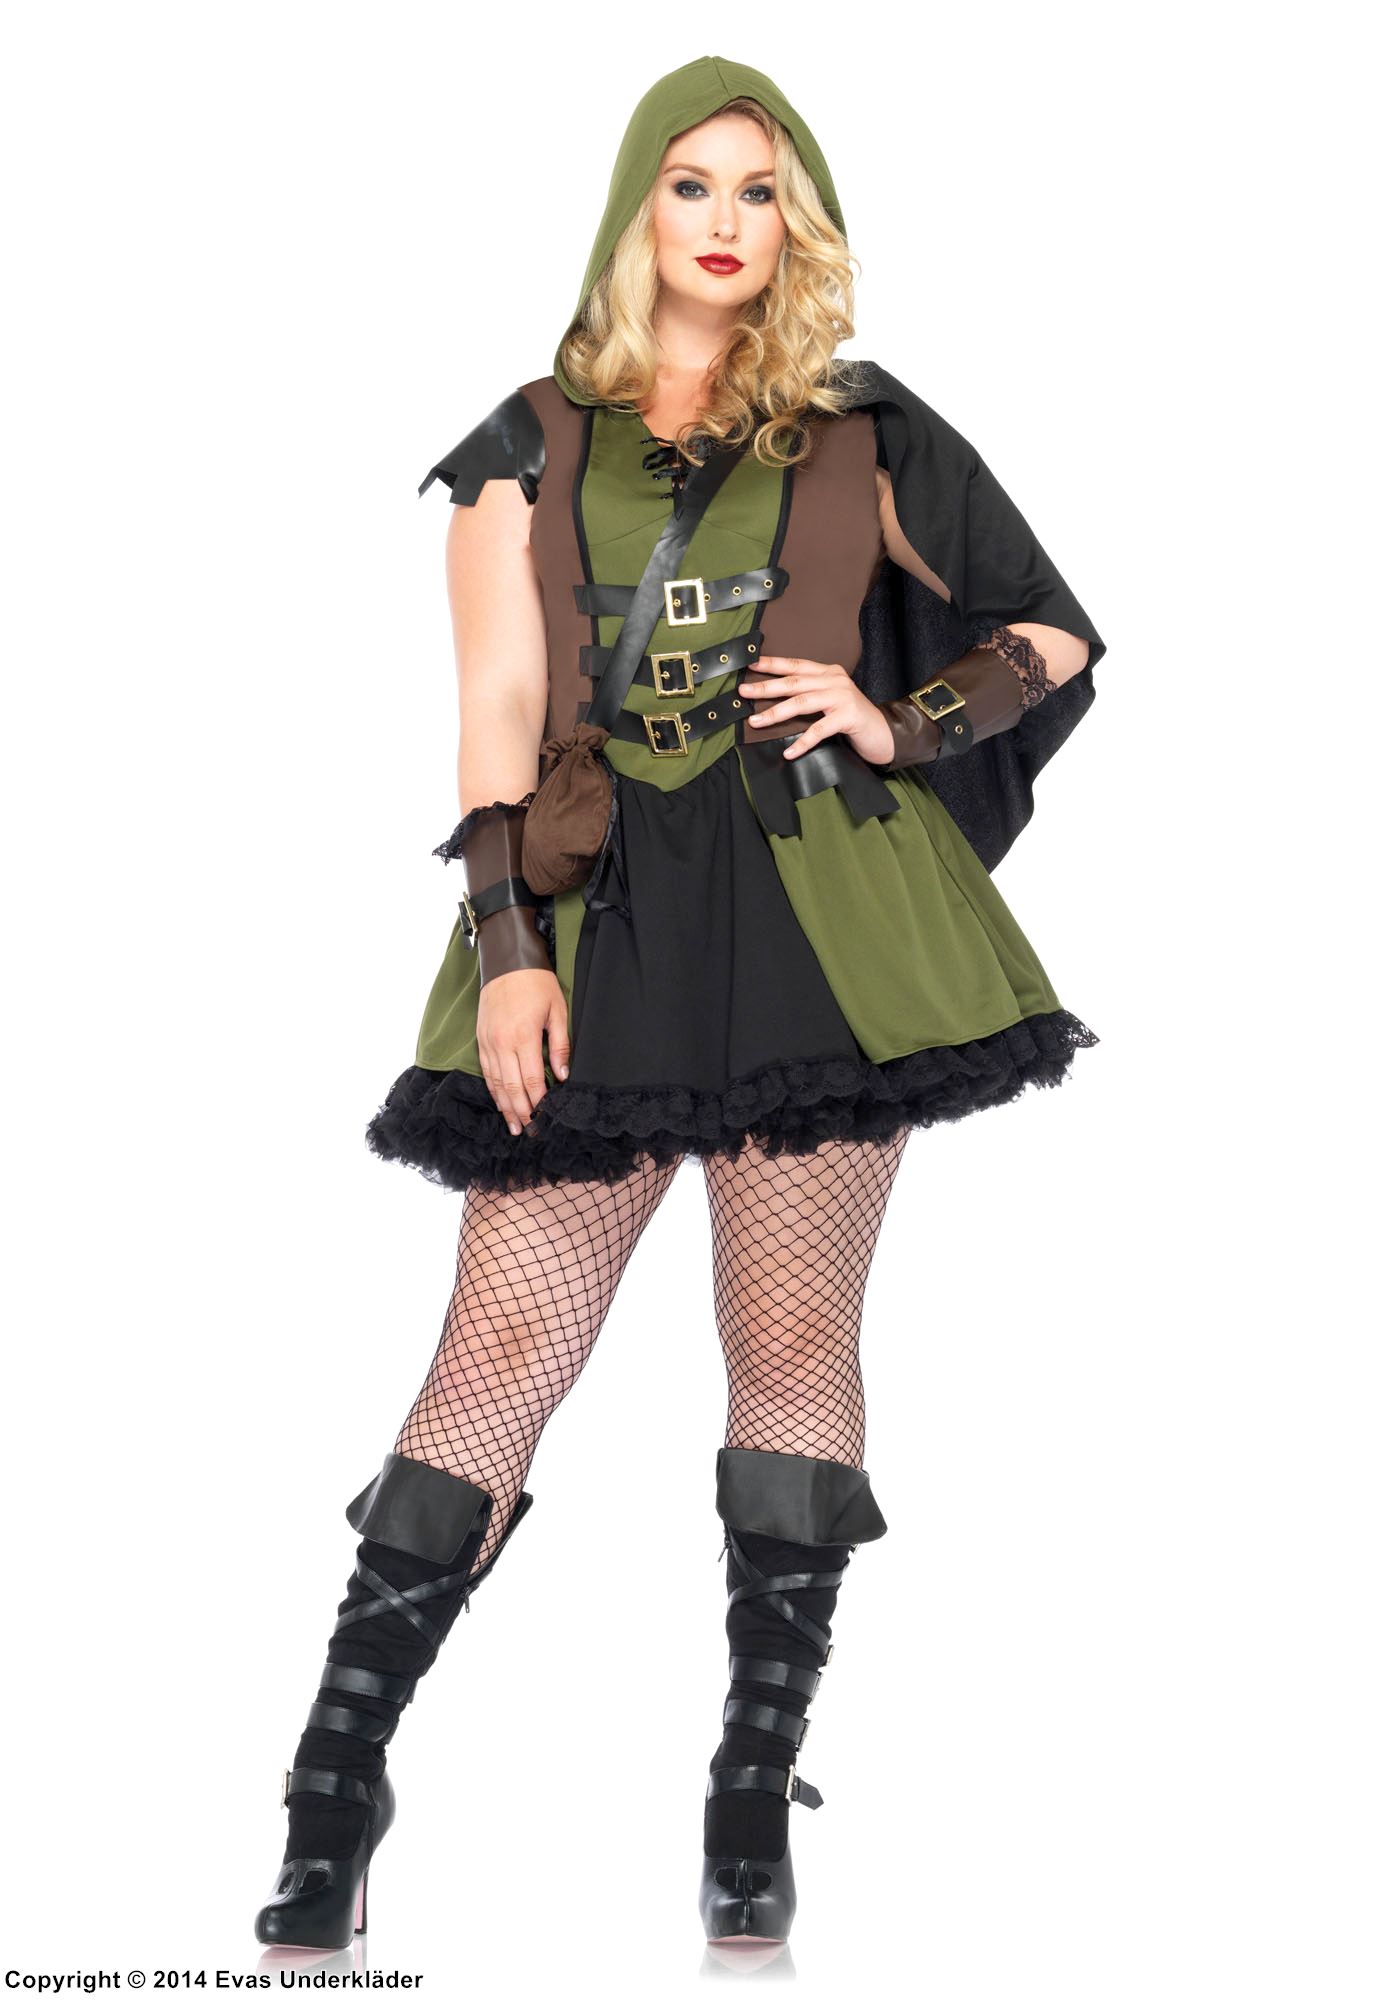 Weiblicher Robin Hood, Kostüm-Kleid, Spitzenbesatz, Gürtel, Mantel, S bis 4XL